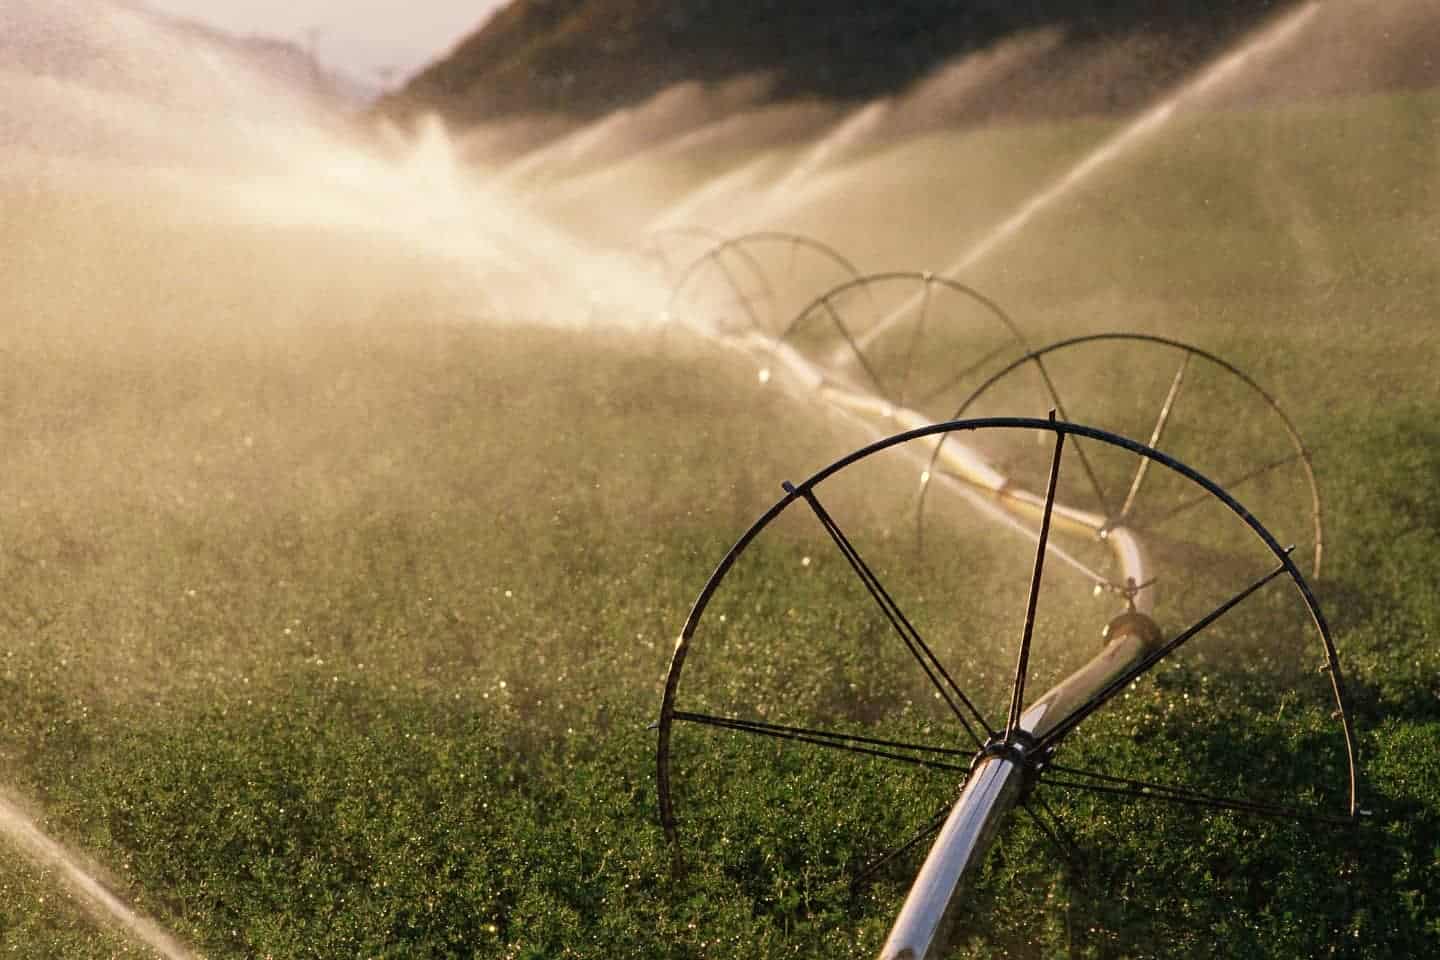 water sprinklers in operation on crop